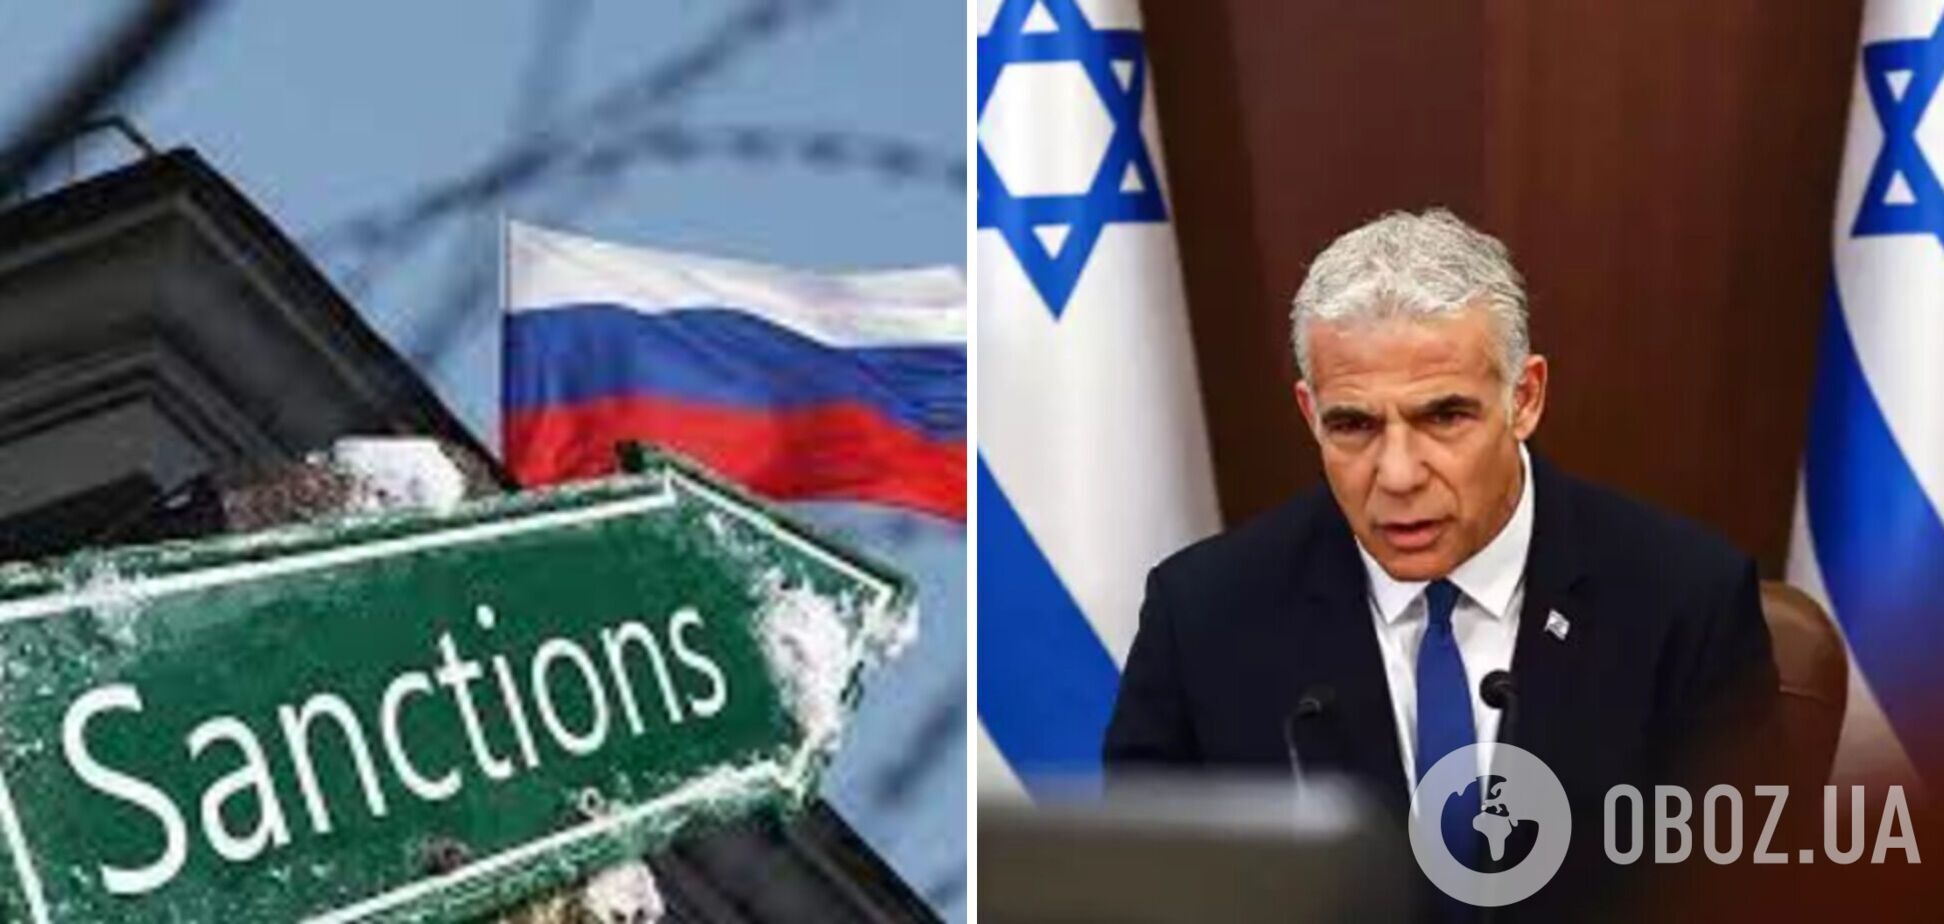 Ізраїль може приєднатися до антиросійських санкцій, якщо в Росії заборонять 'Сохнут'